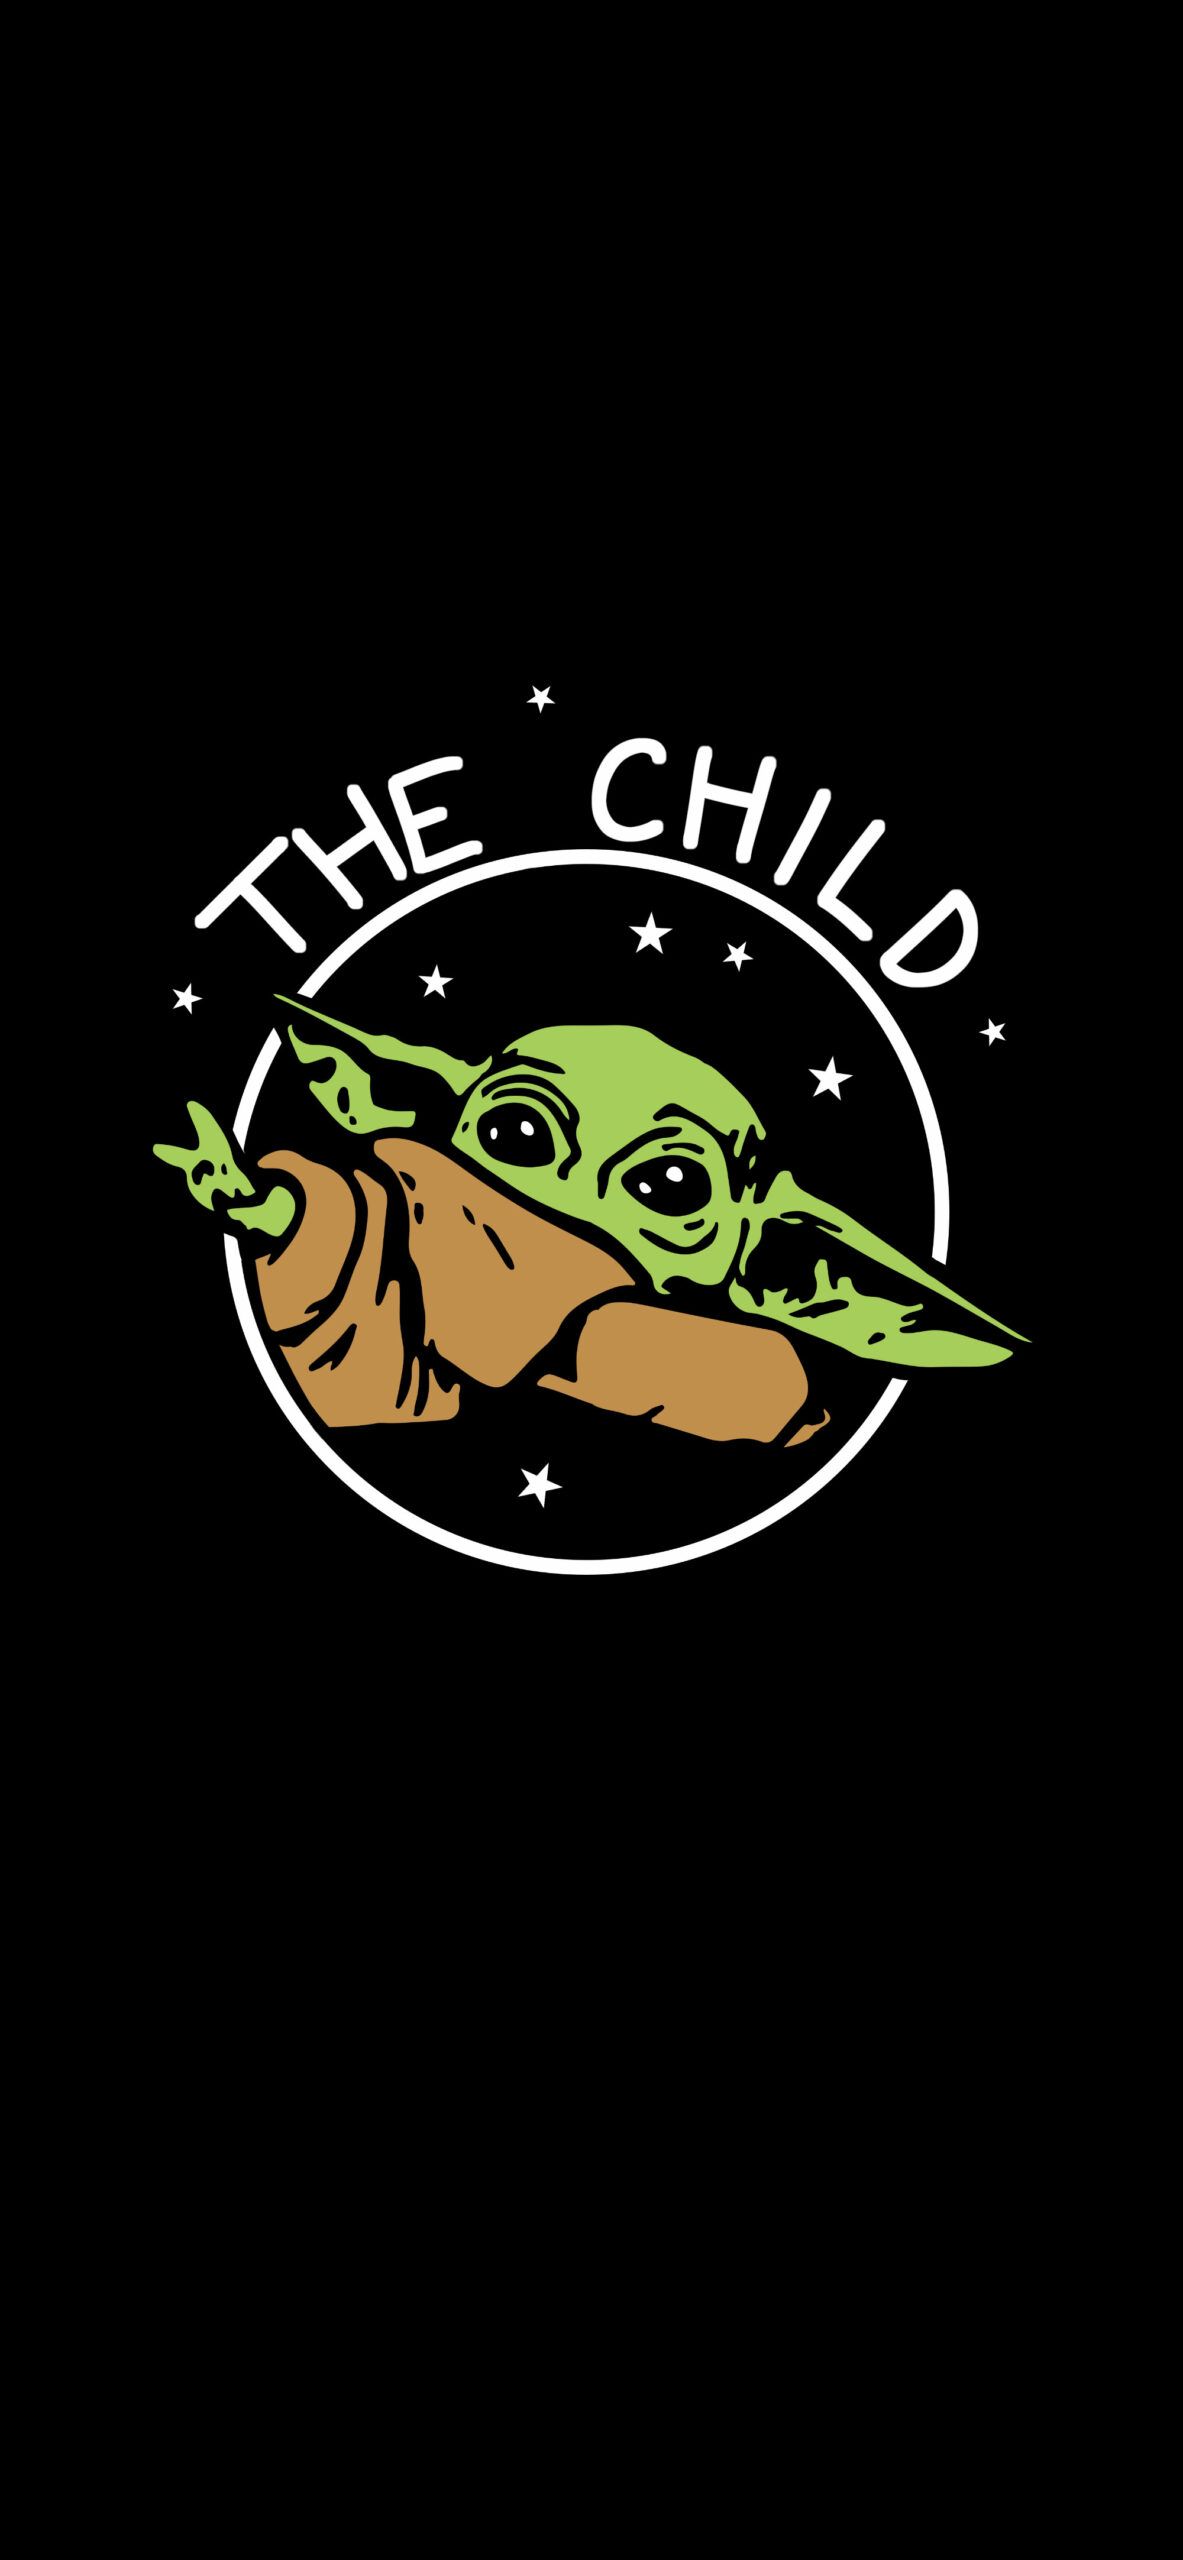 The child logo - Baby Yoda